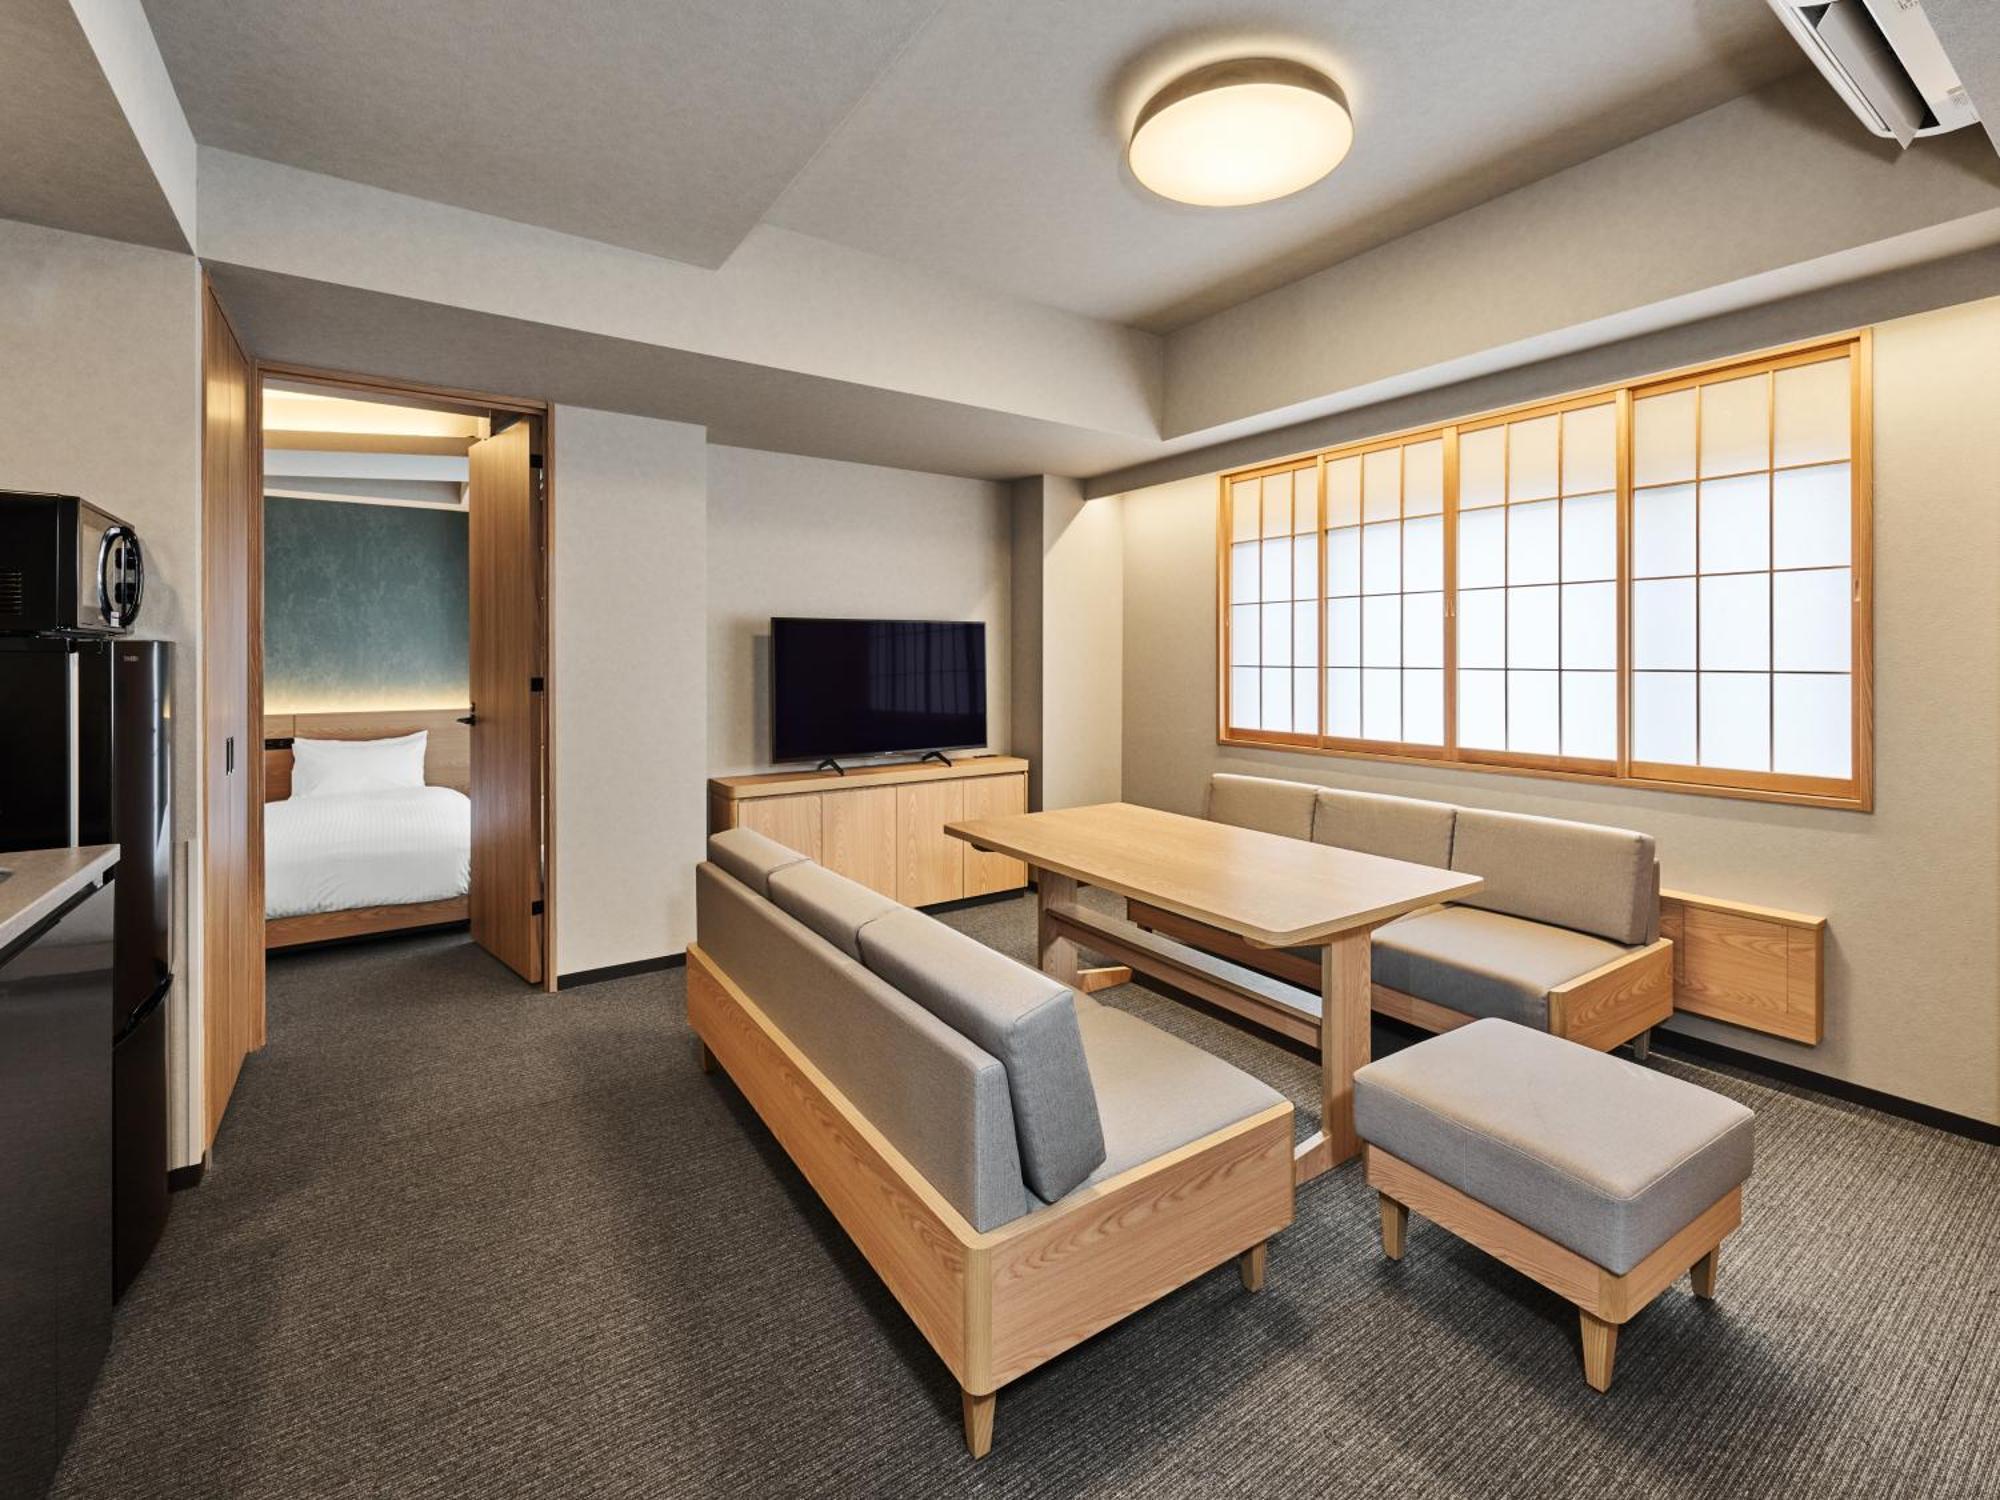 Mimaru Suites Tokyo Nihombashi Extérieur photo